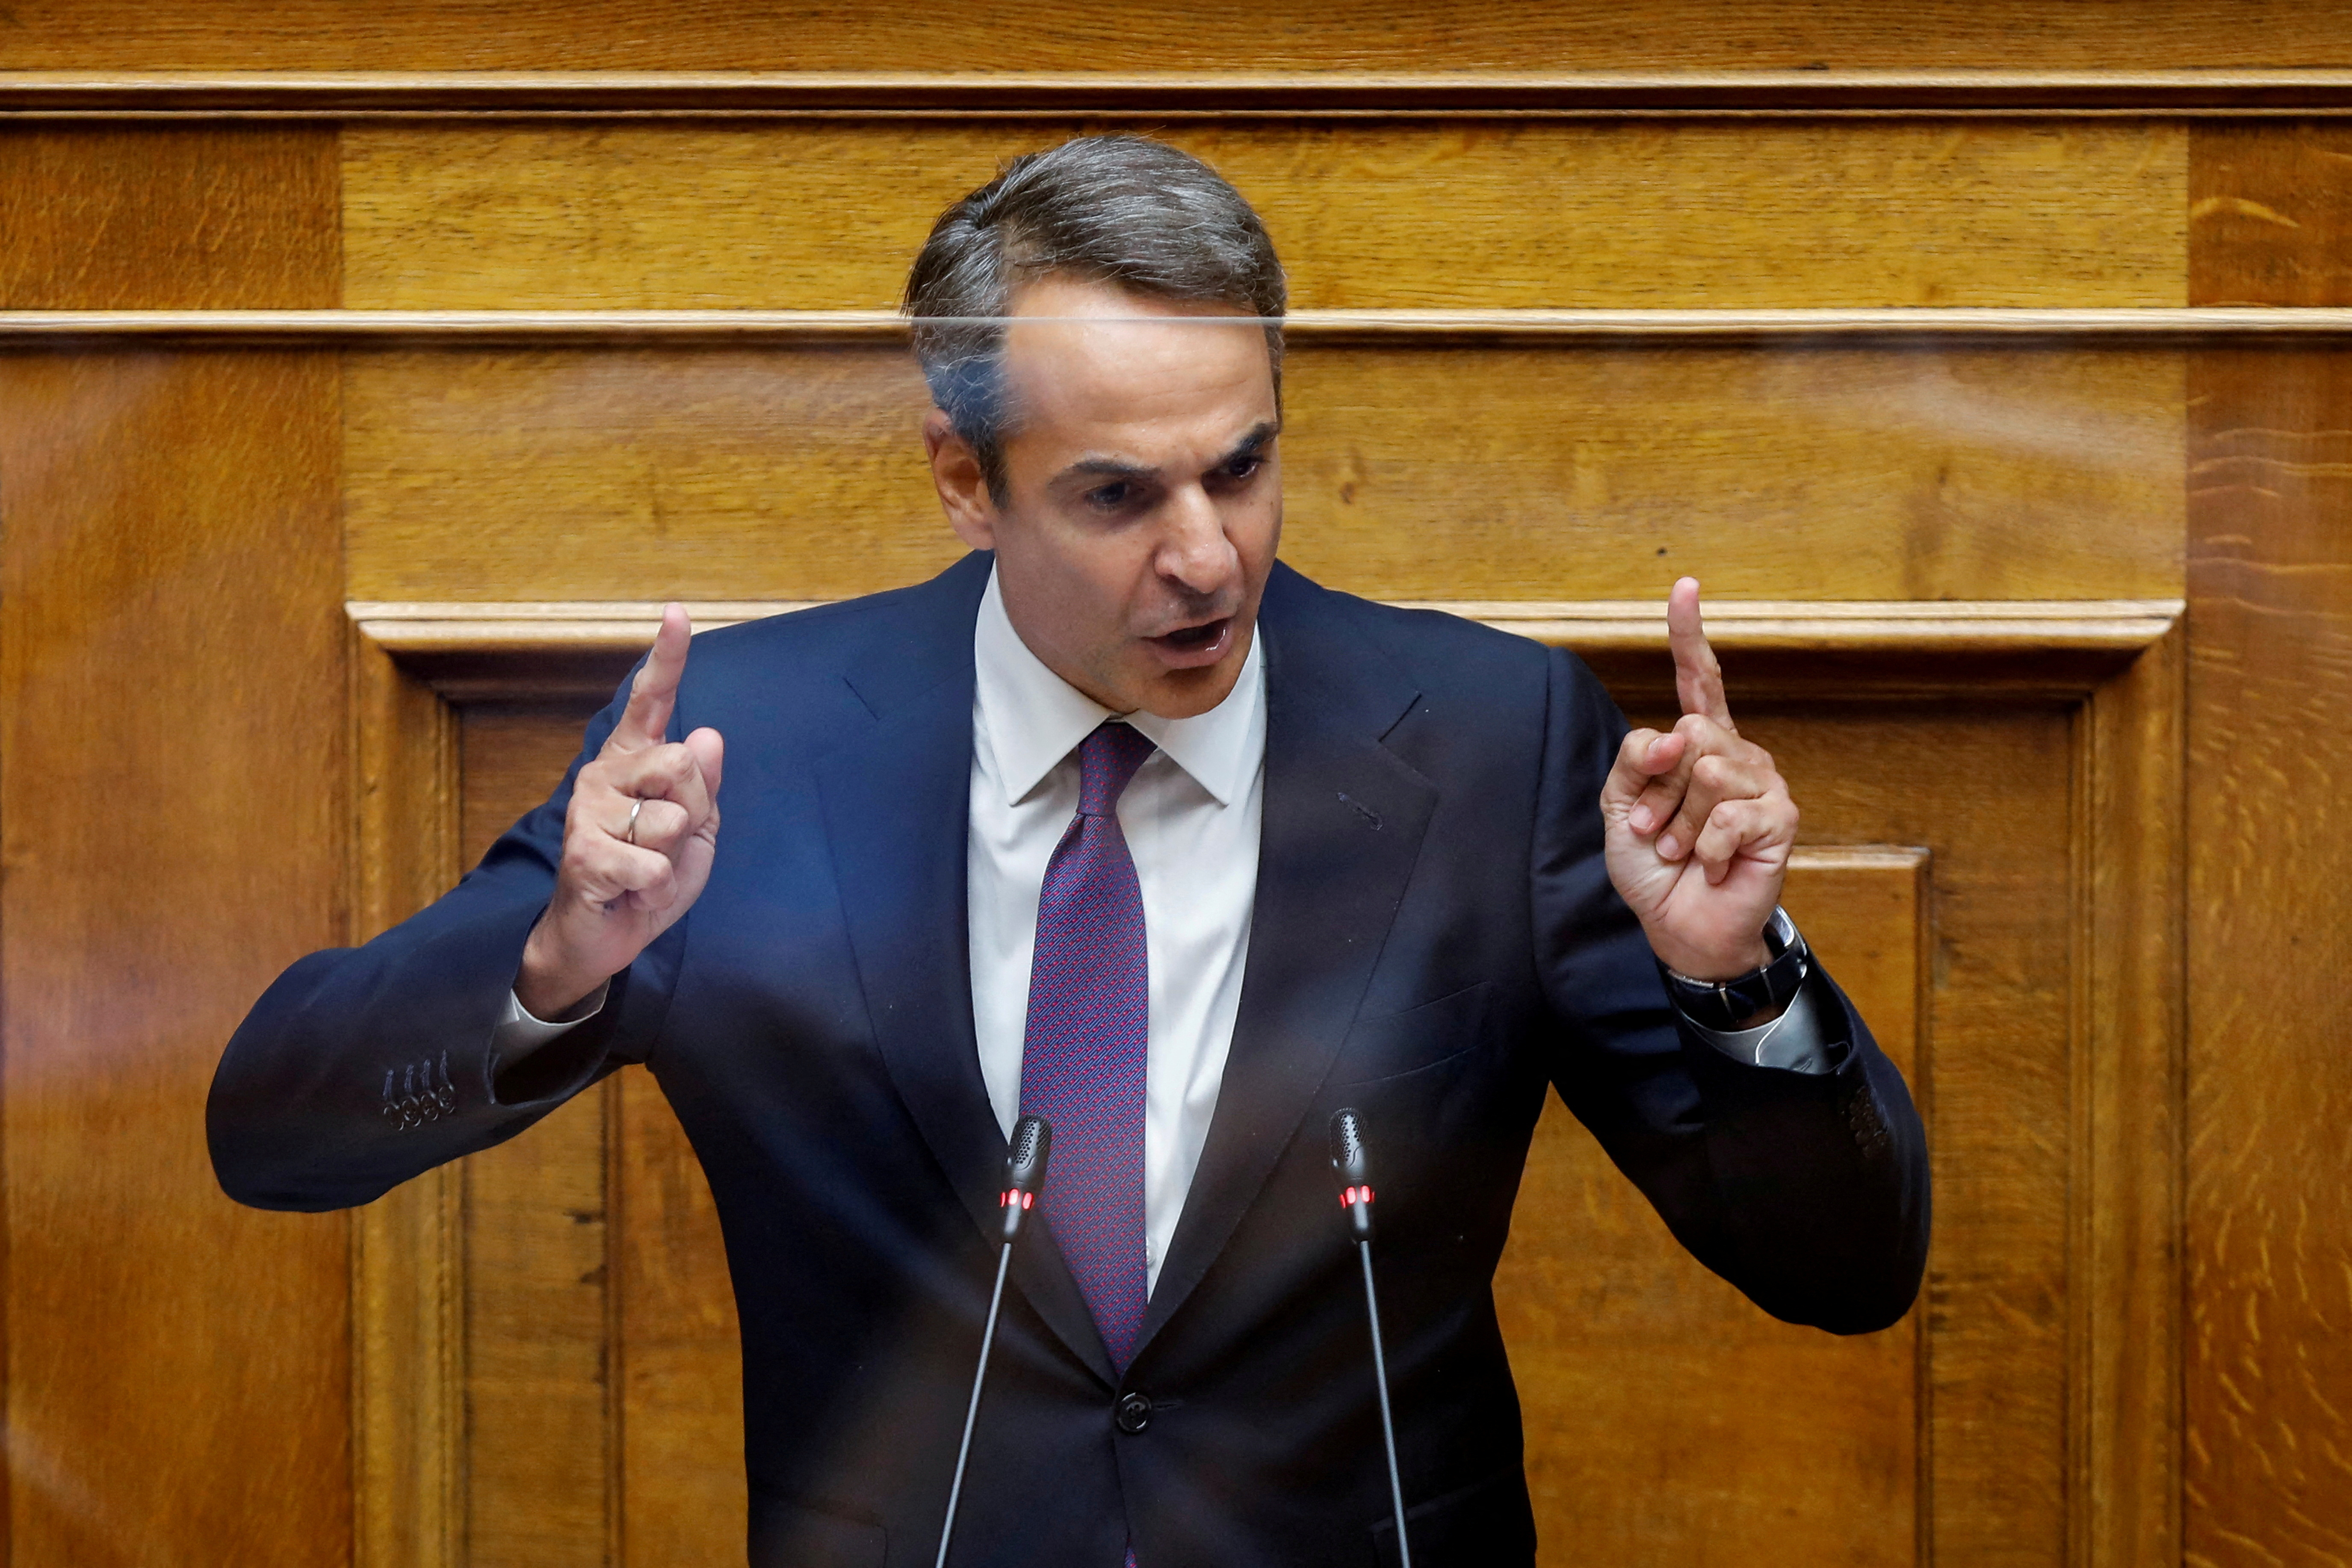 El primer ministro de Grecia adelantó las elecciones generales tras la ola de protestas por el trágico accidente ferroviario que dejó 57 muertos